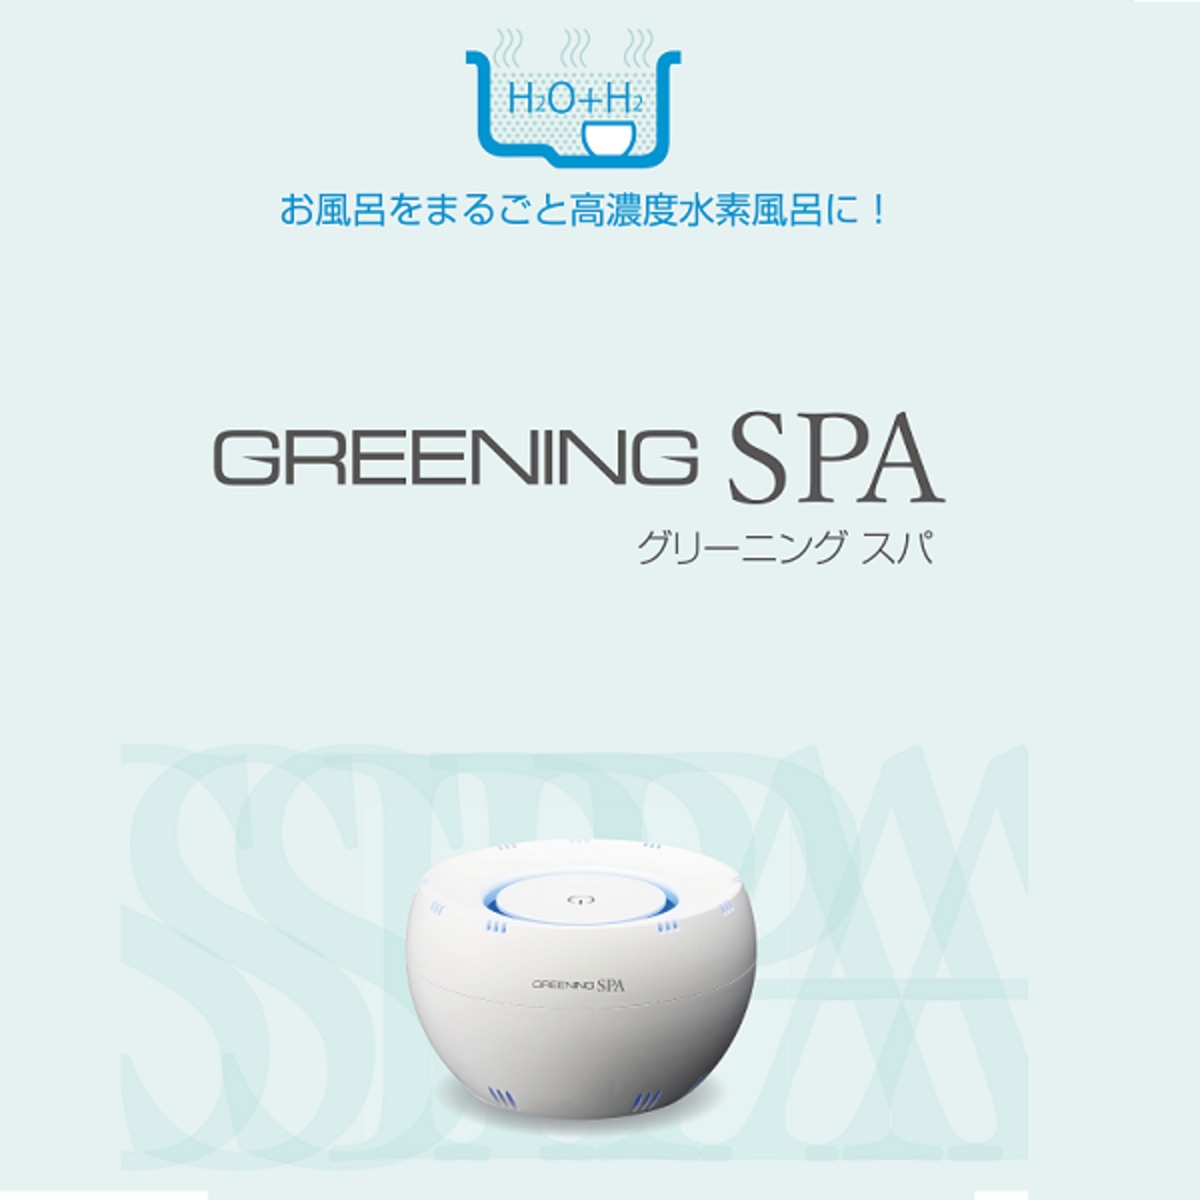 水素風呂 GREENING SPA | ネットショップ「Densan」(株式会社電産 ...